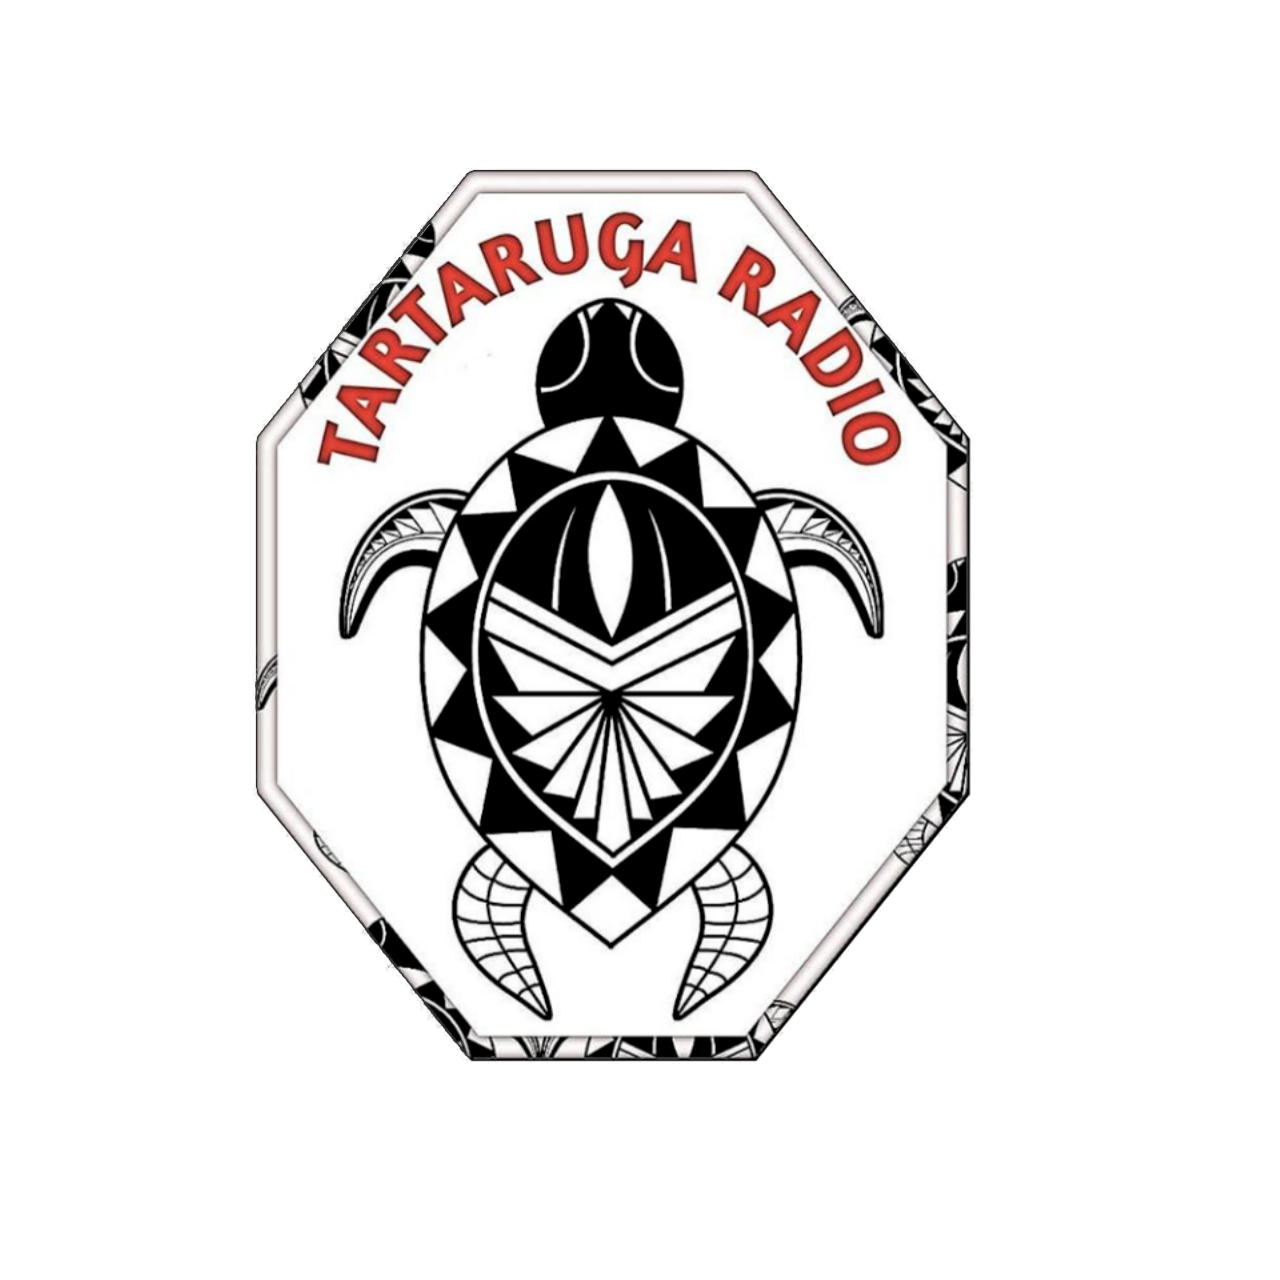 Tartaruga radio